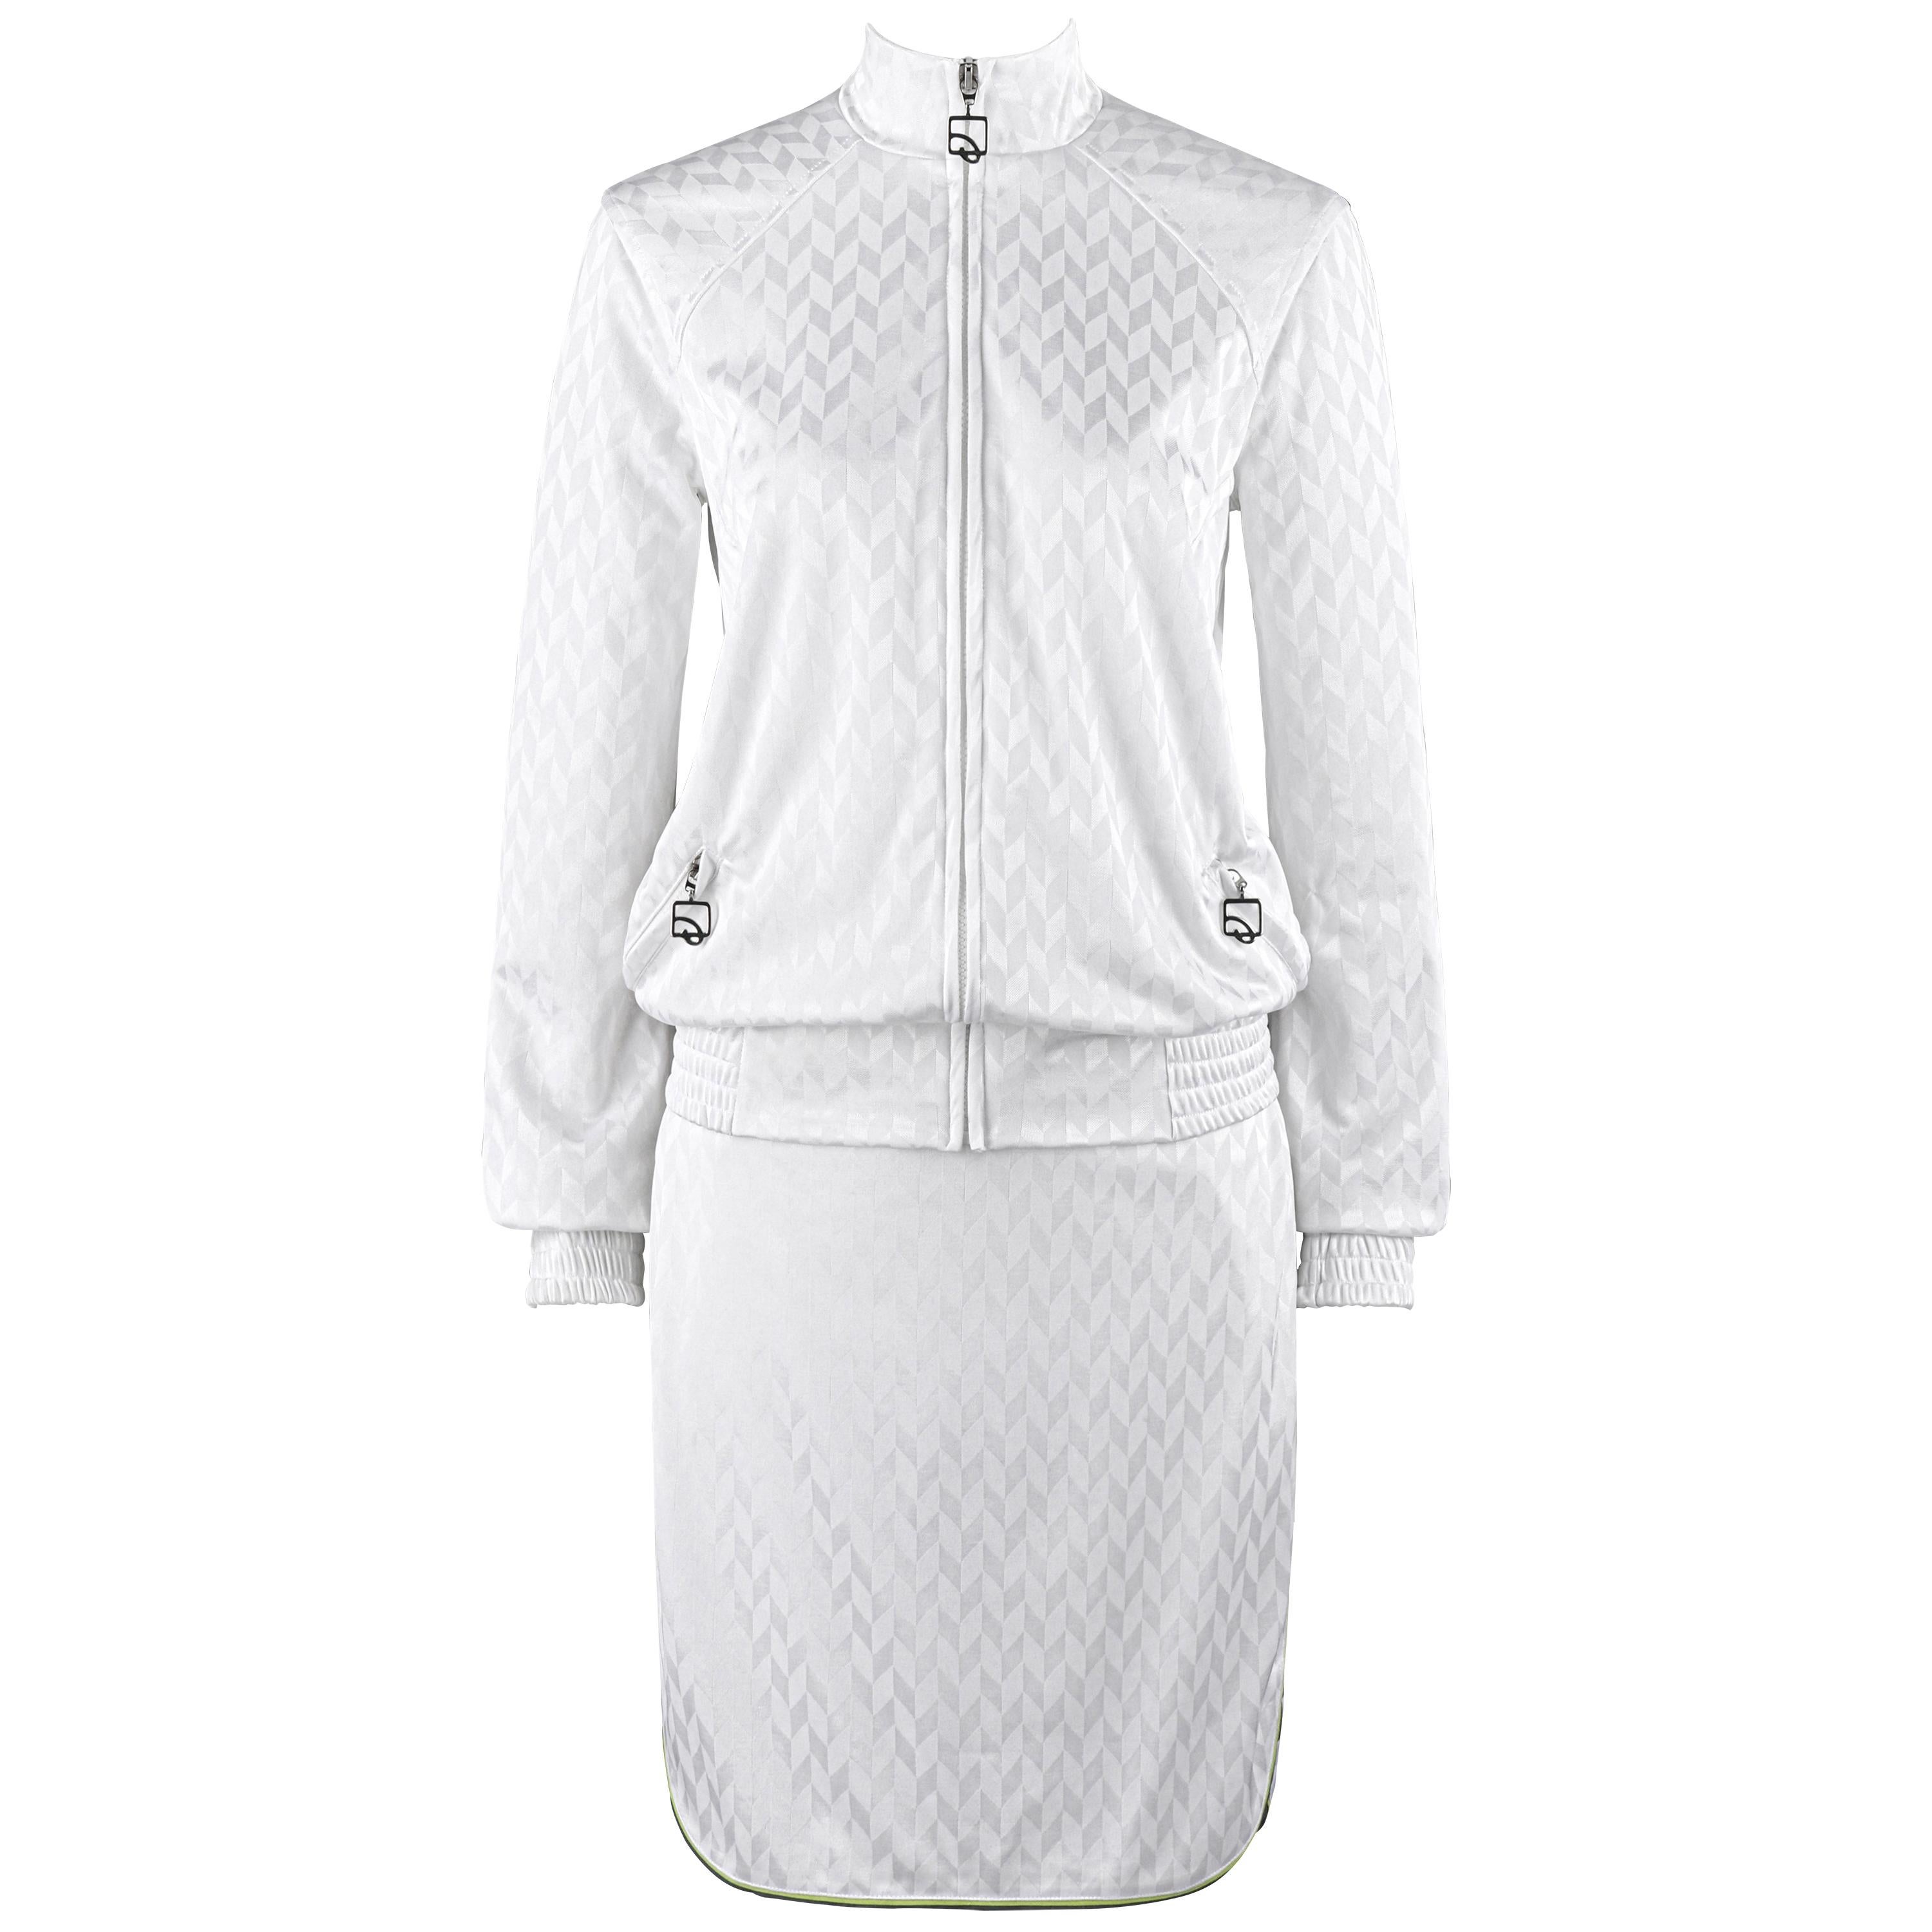 ALEXANDER McQUEEN S/S 2000 "Eye" 2pc White Herringbone Athletic Skirt Set NWT